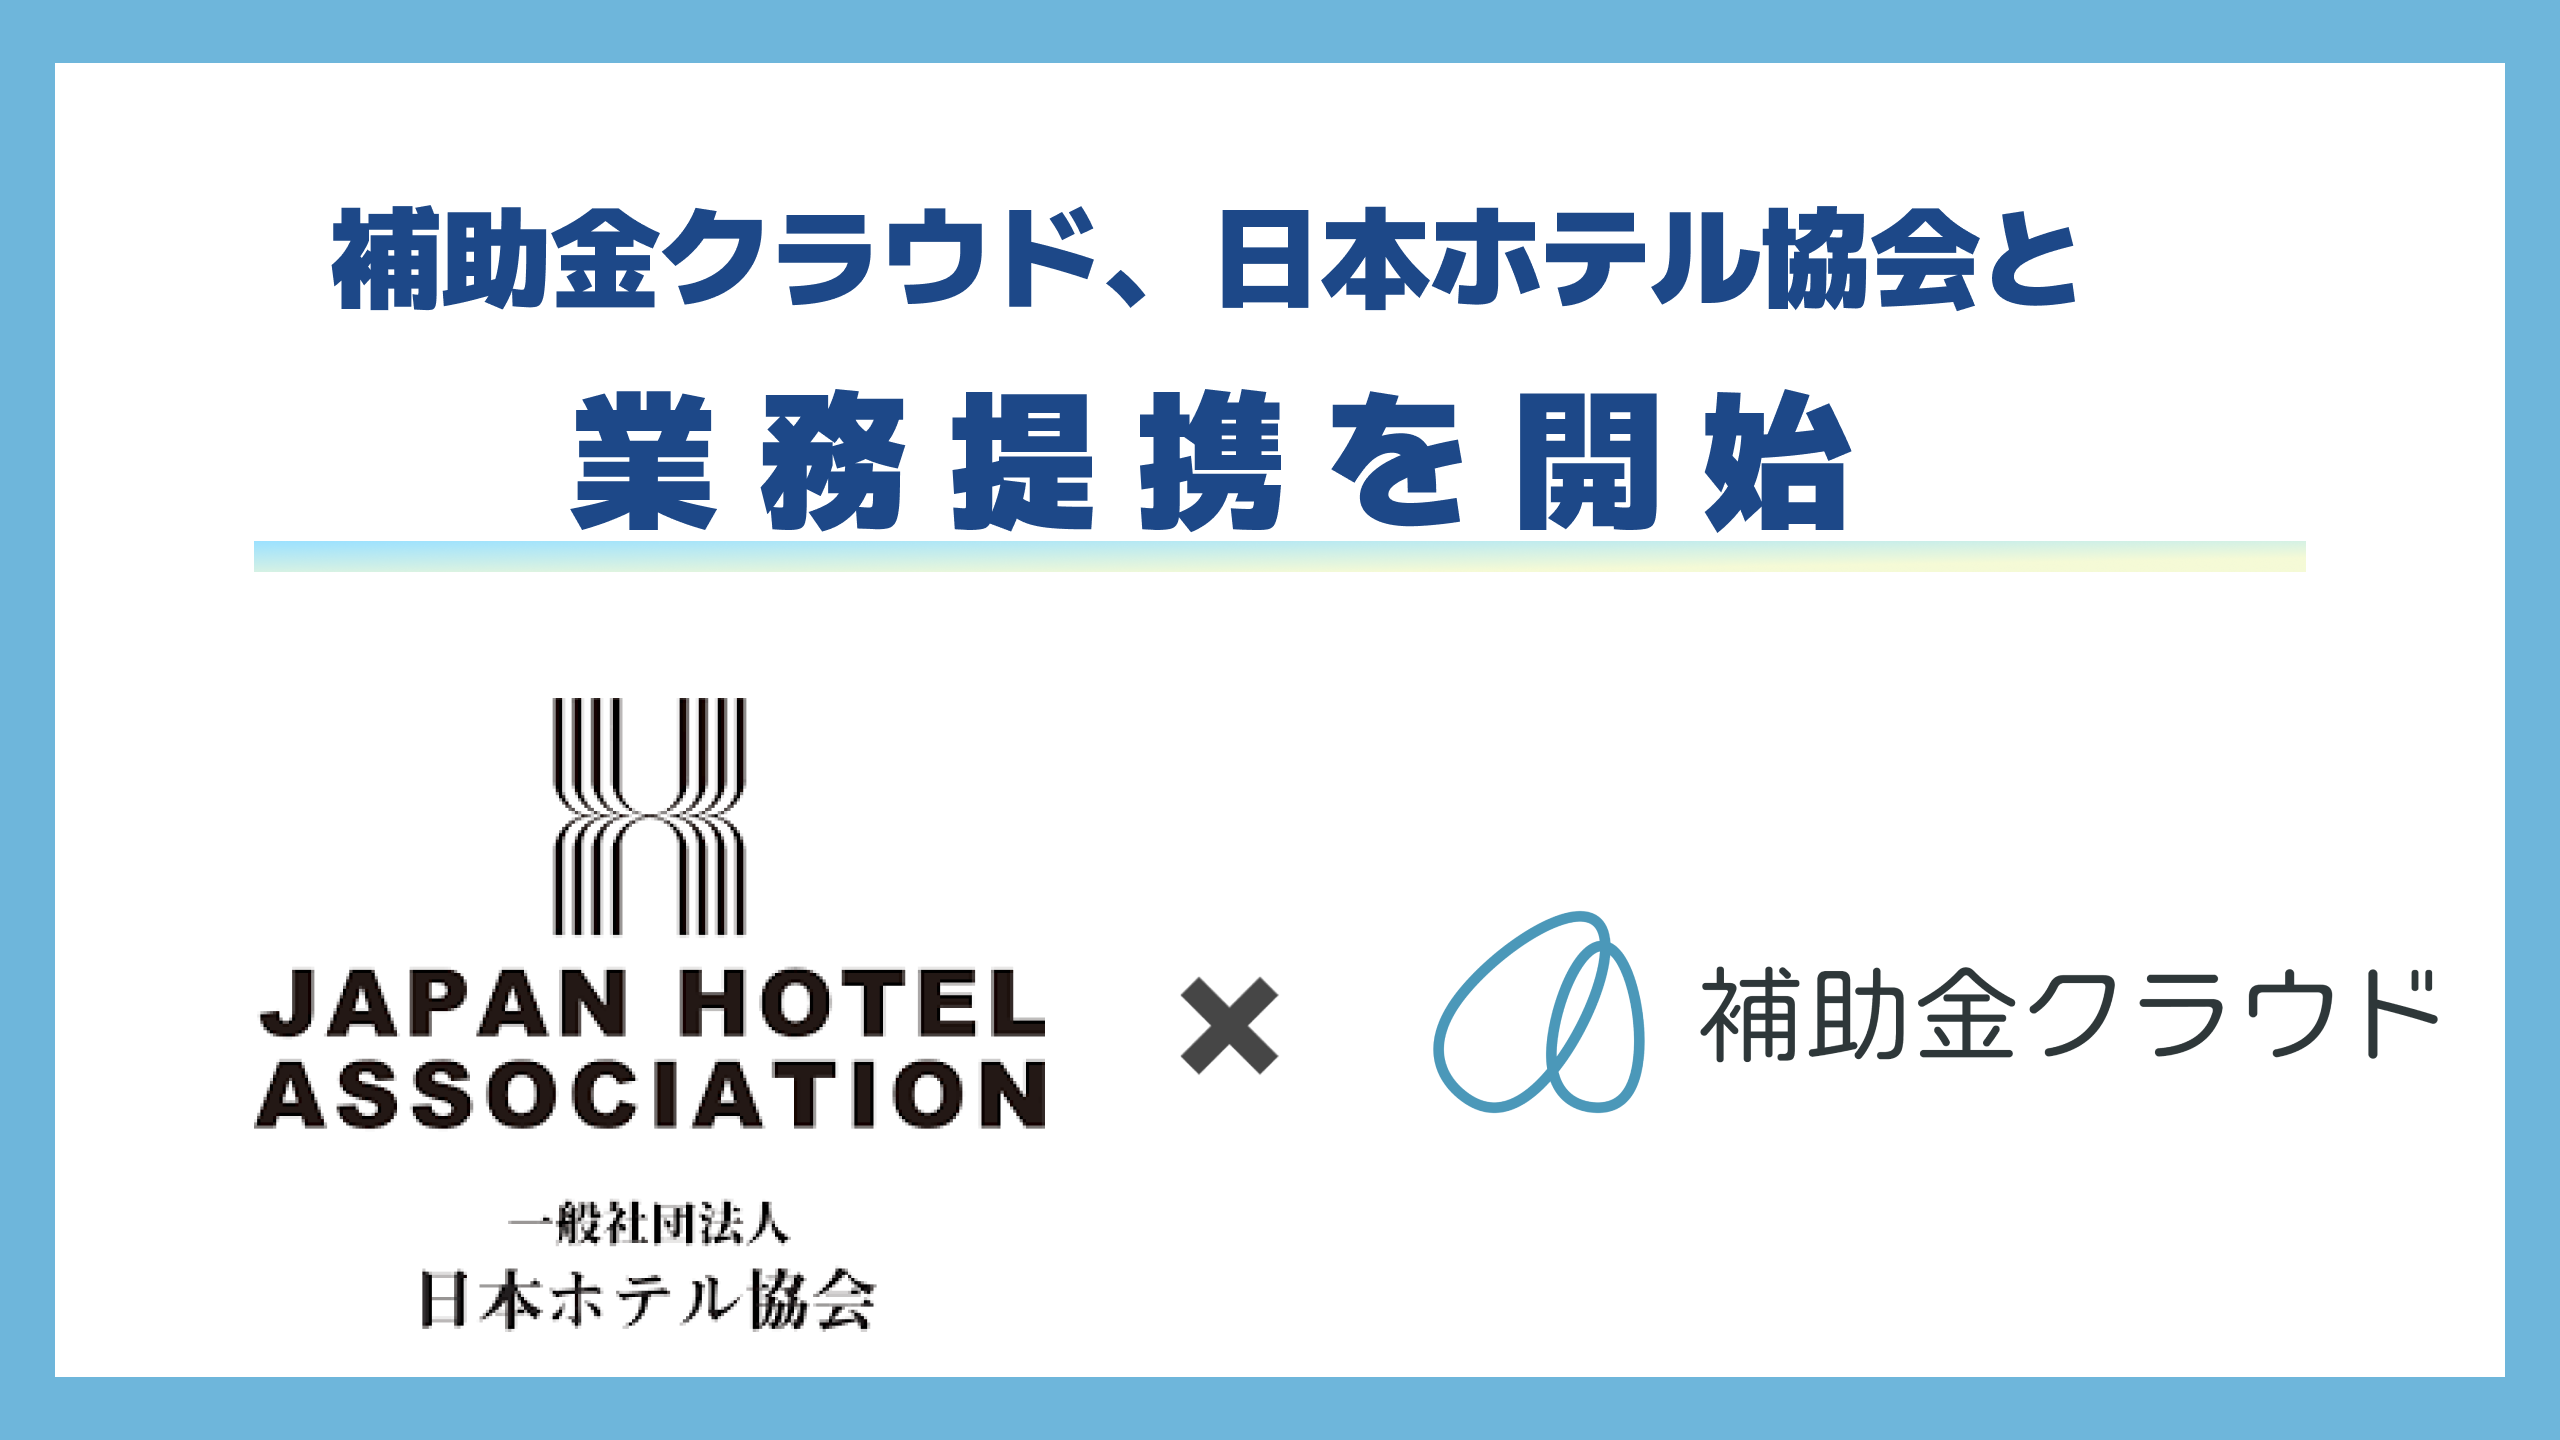 補助金クラウド、日本ホテル協会の加盟ホテルへ補助金を活用した経営支援を推進することを目的に、日本ホテル...